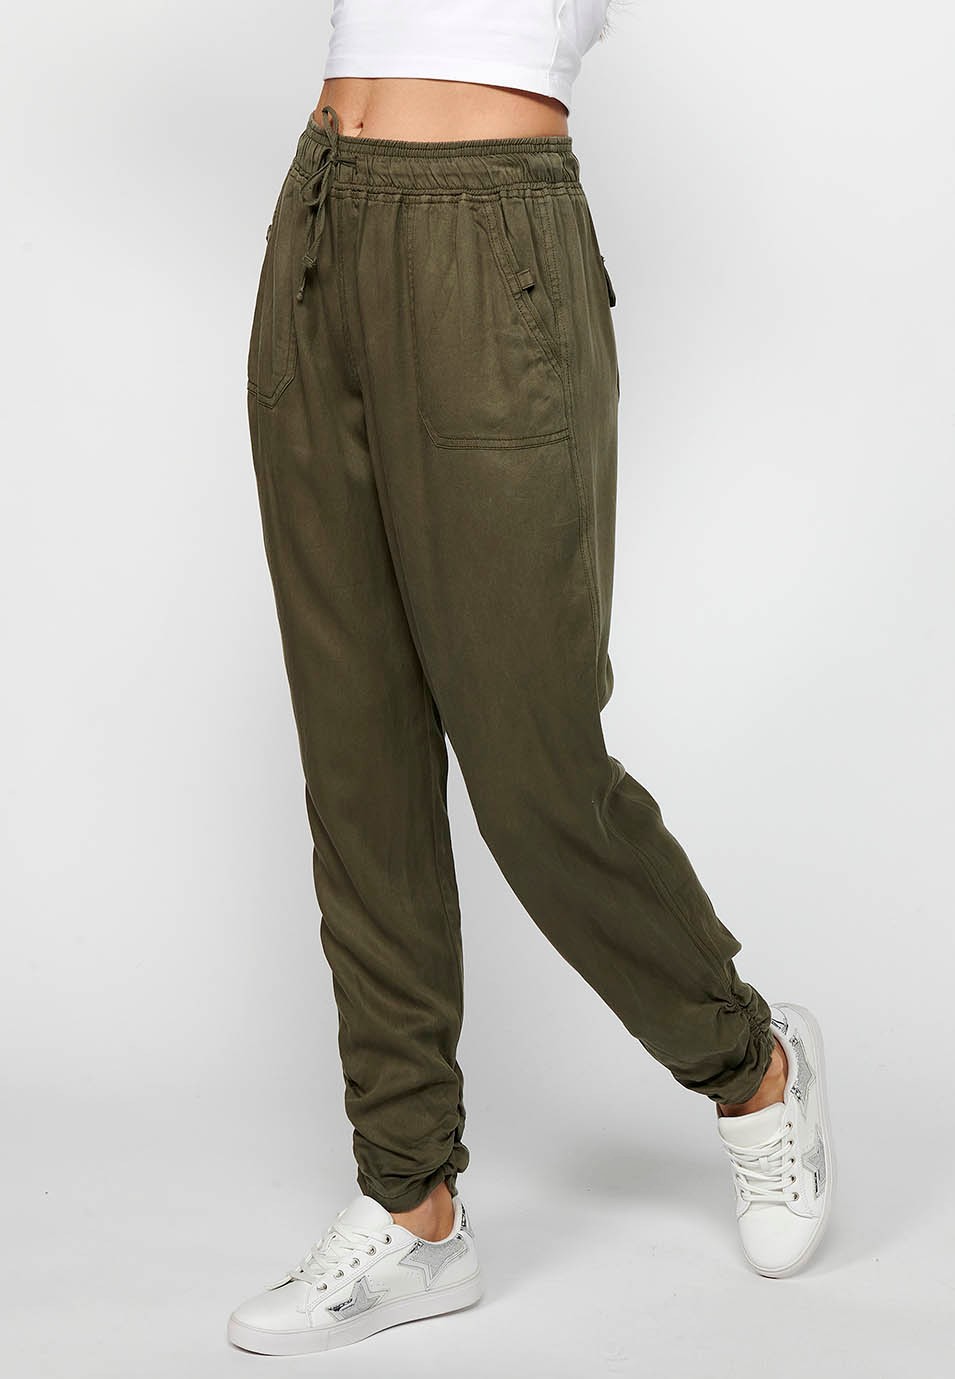 Pantalón largo jogger con Acabado rizado y Cintura engomada con Cuatro bolsillos, dos traseros con solapa de Color Kaki para Mujer 2